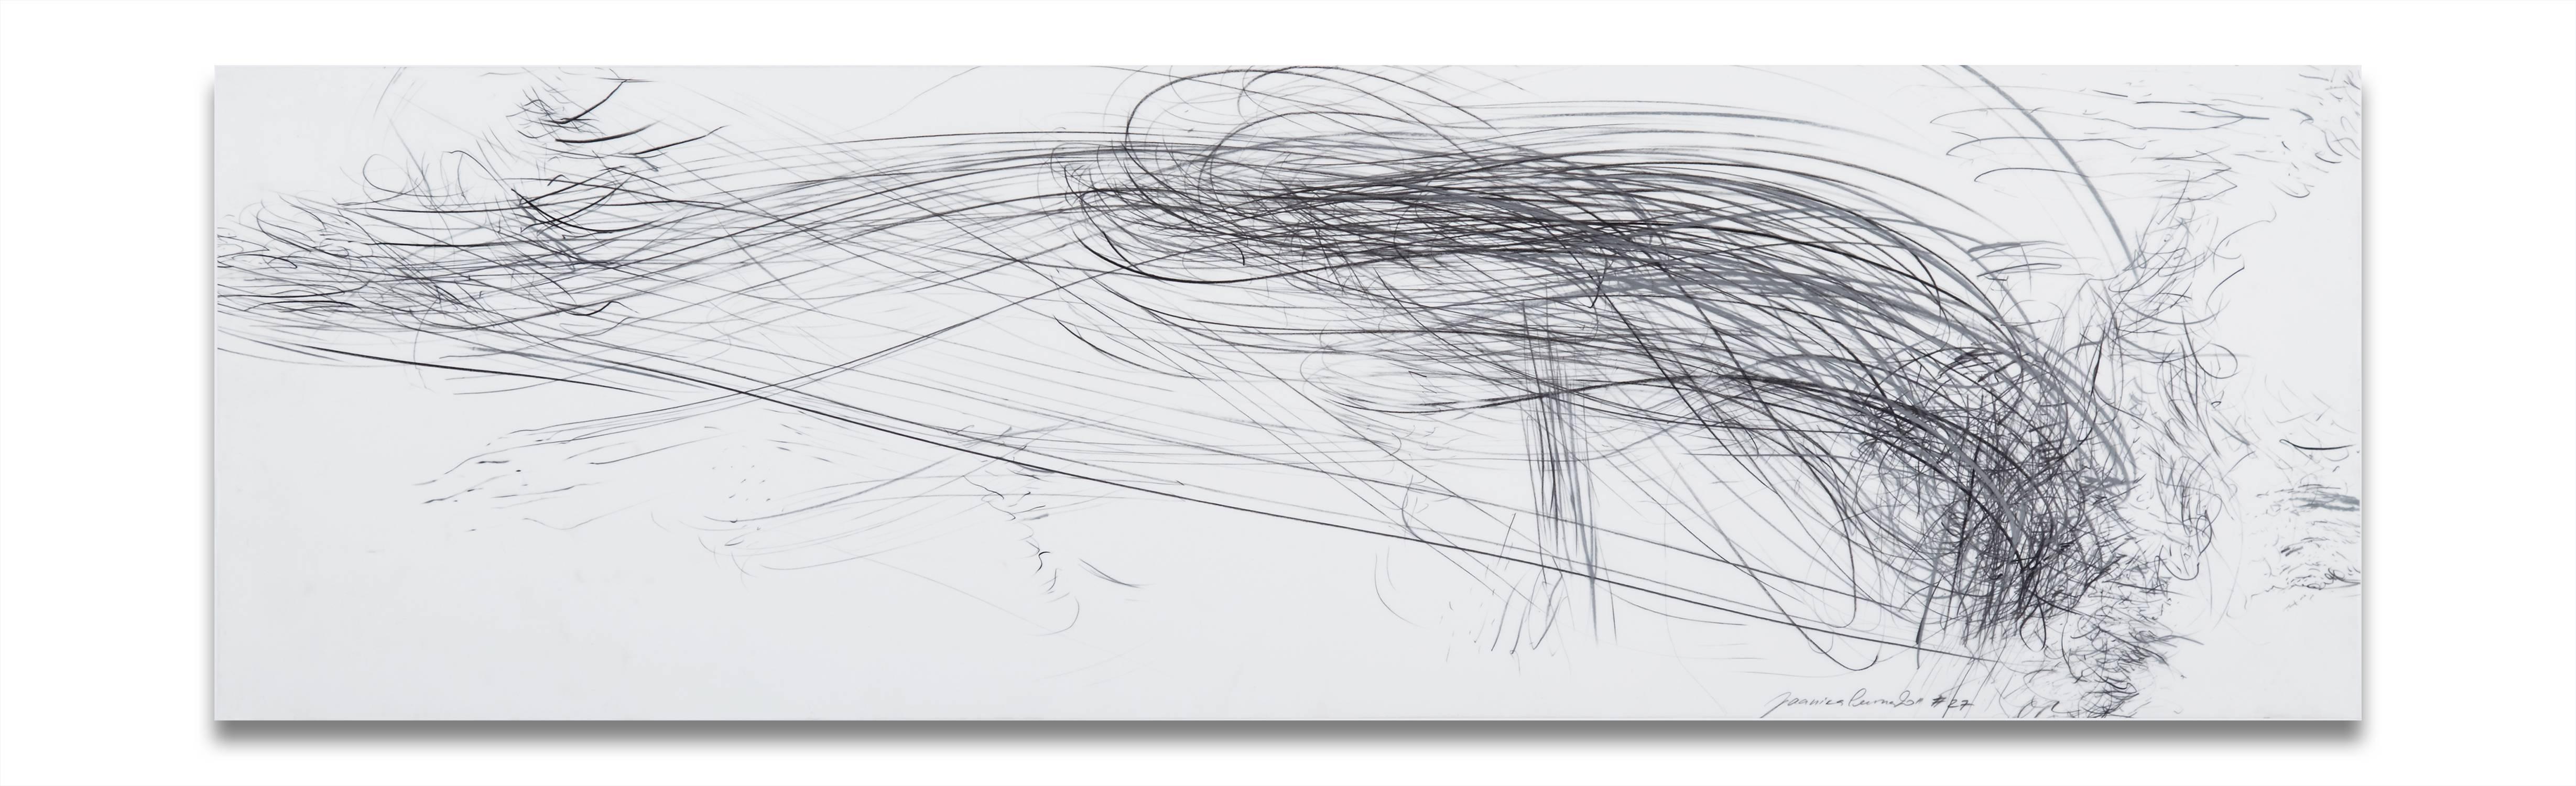 Jaanika Peerna Abstract Drawing - Storm series horizontal 40 (Abstract drawing)